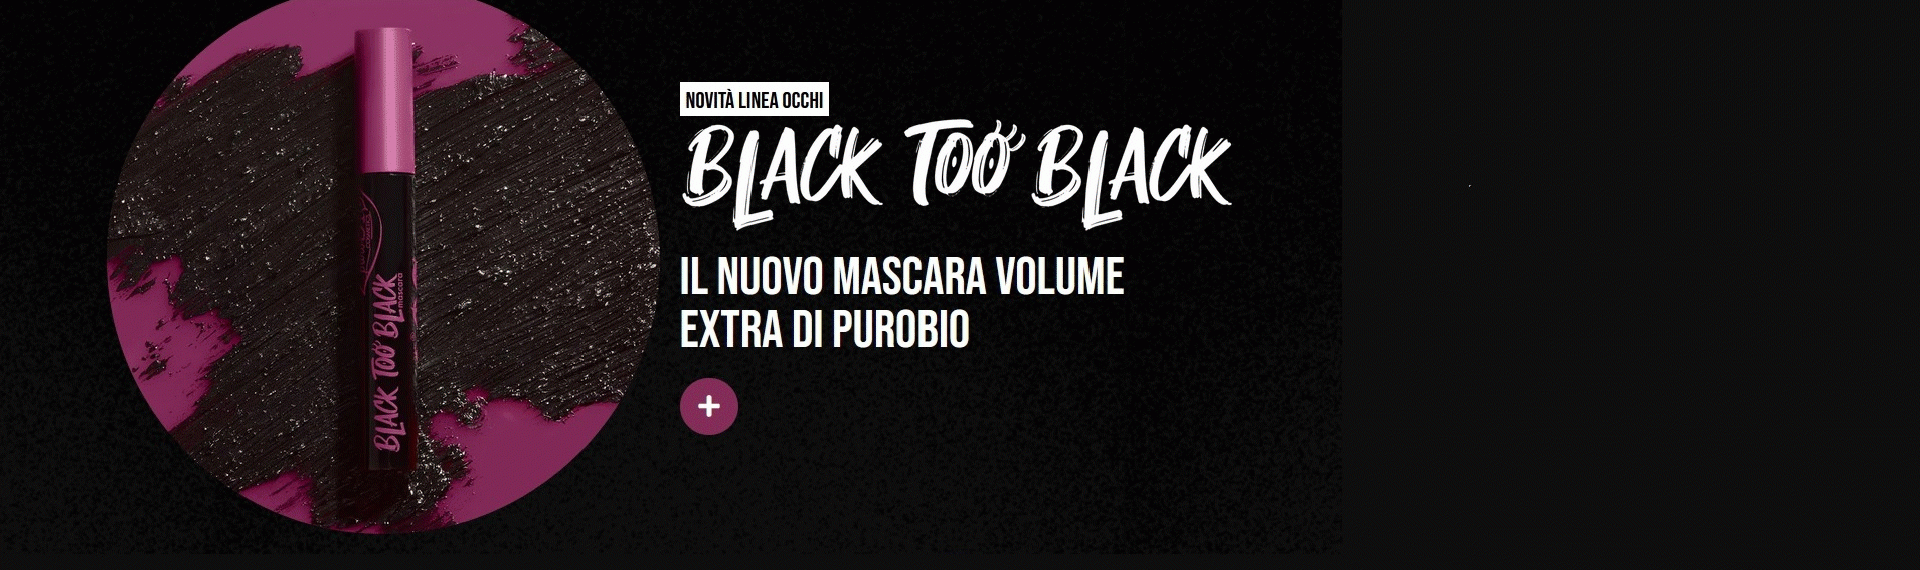 black too black